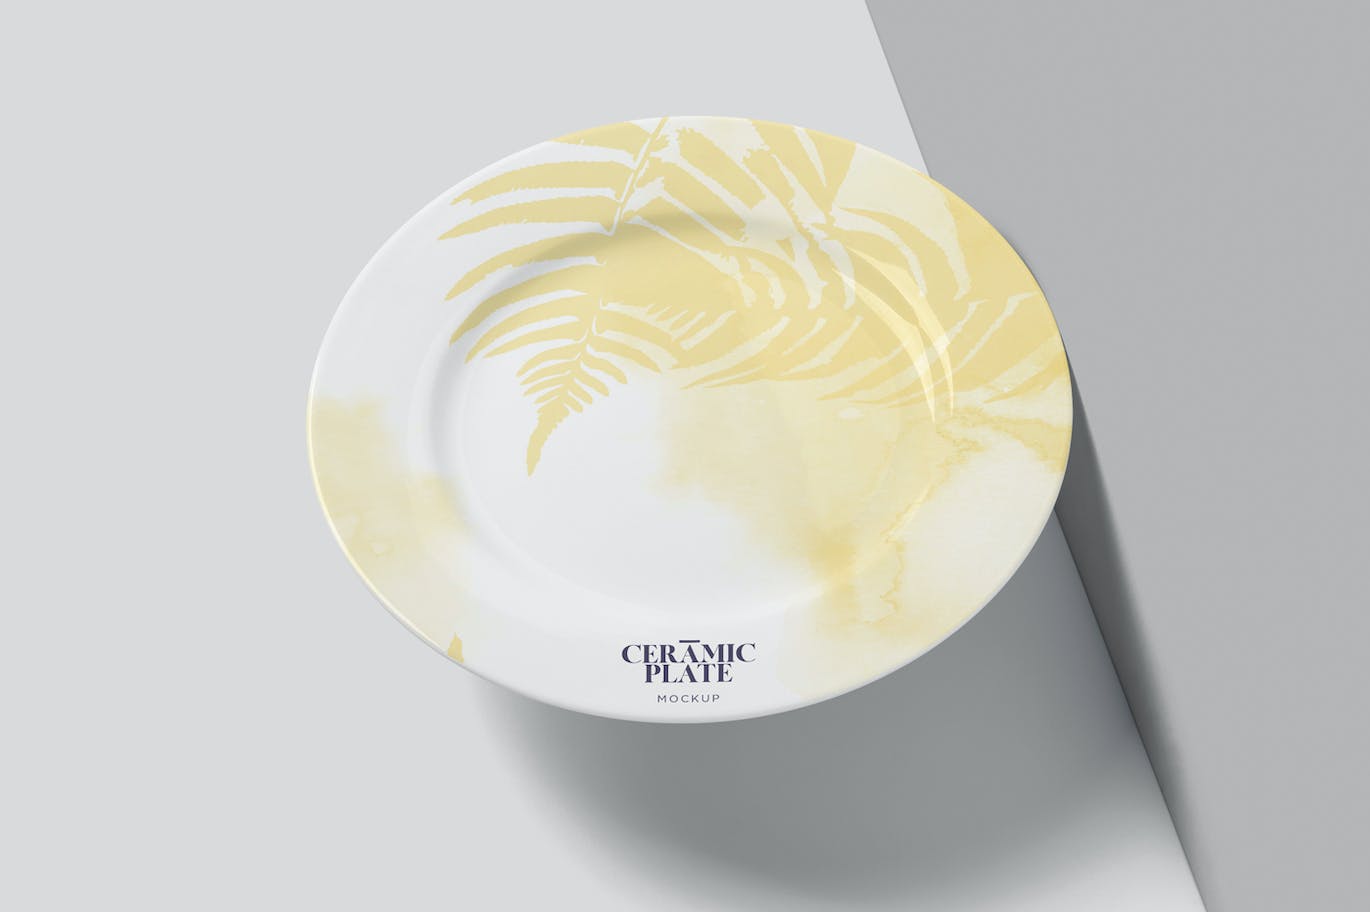 陶瓷盘子陶器品牌设计样机 Ceramic Plate Mockups 样机素材 第6张